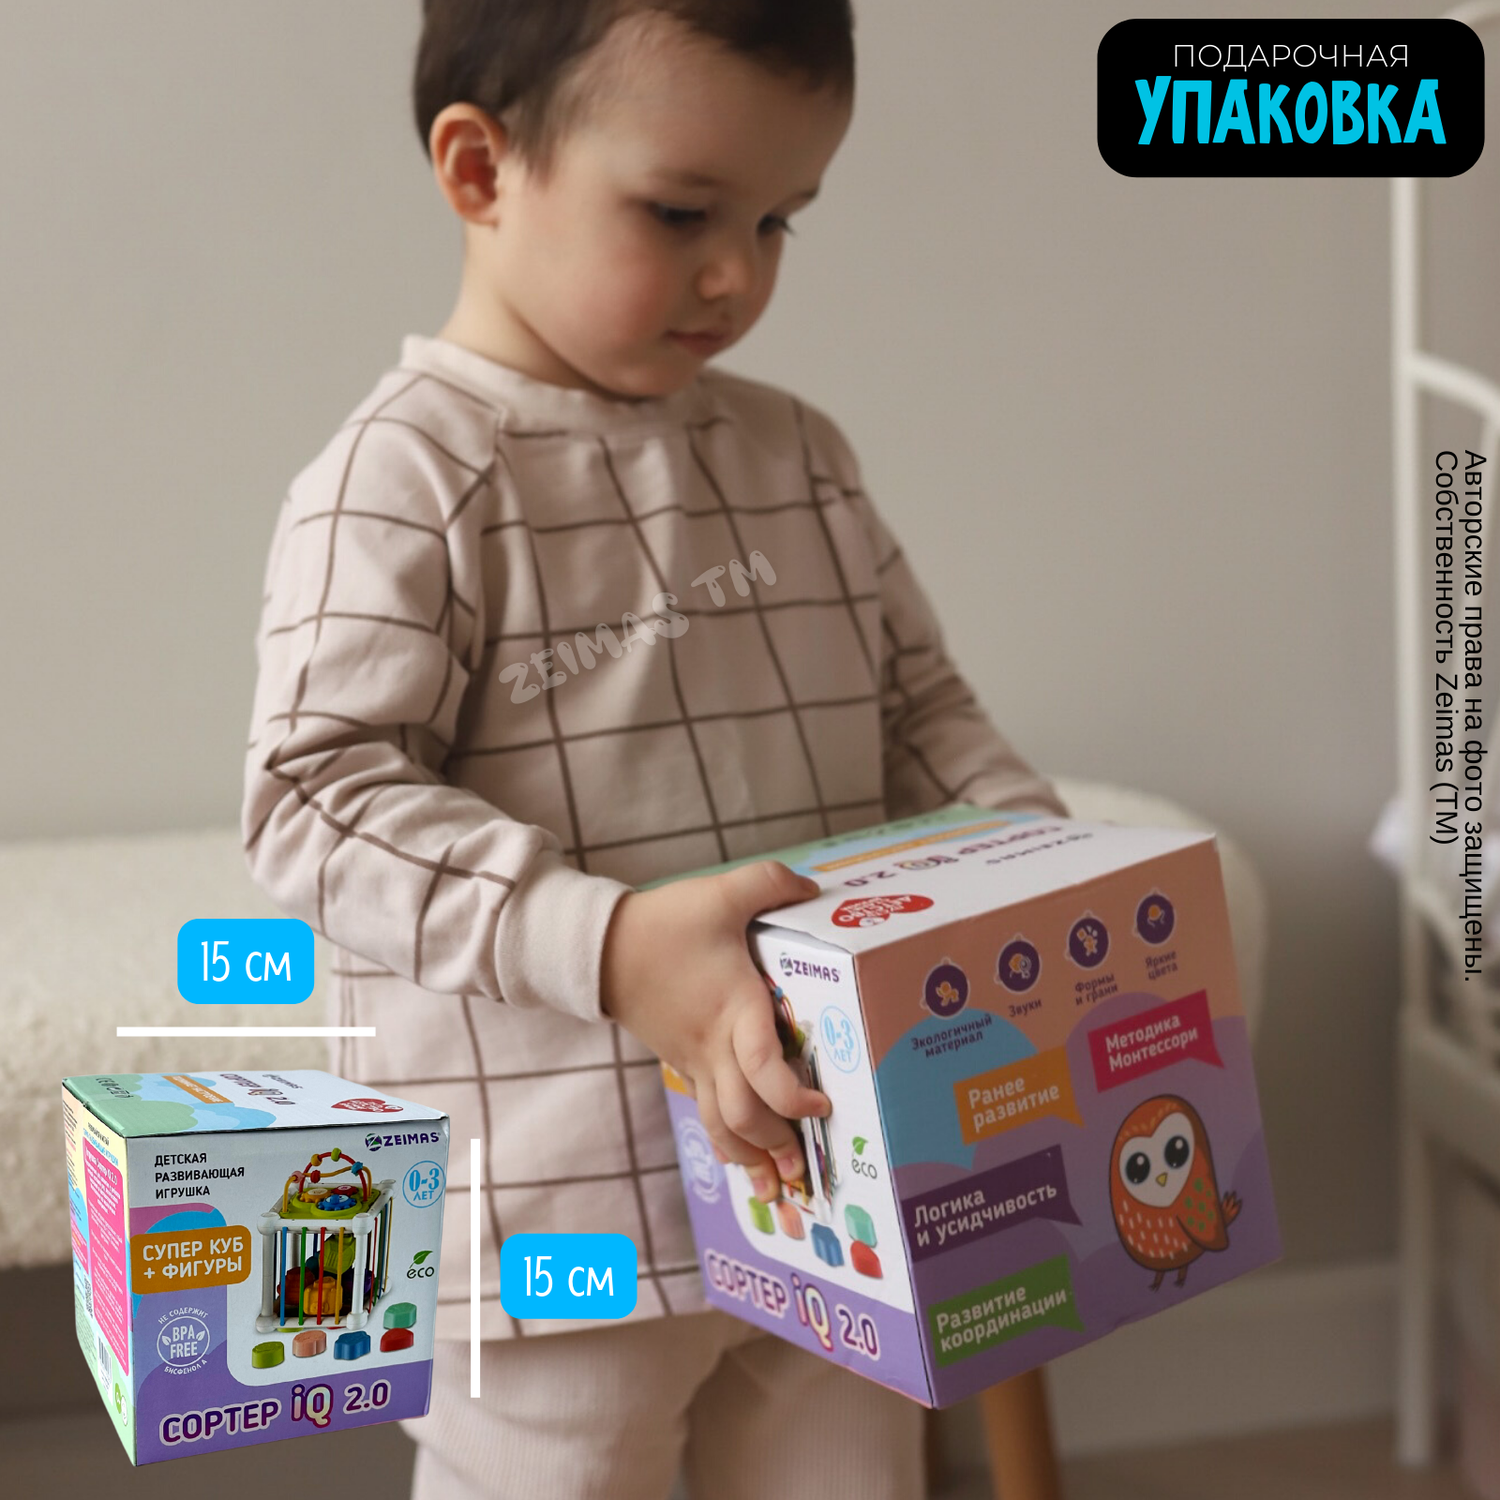 Сортер-куб Zeimas Монтессори 6 фигурок с погремушкой развивающая игрушка ксилофон - фото 14